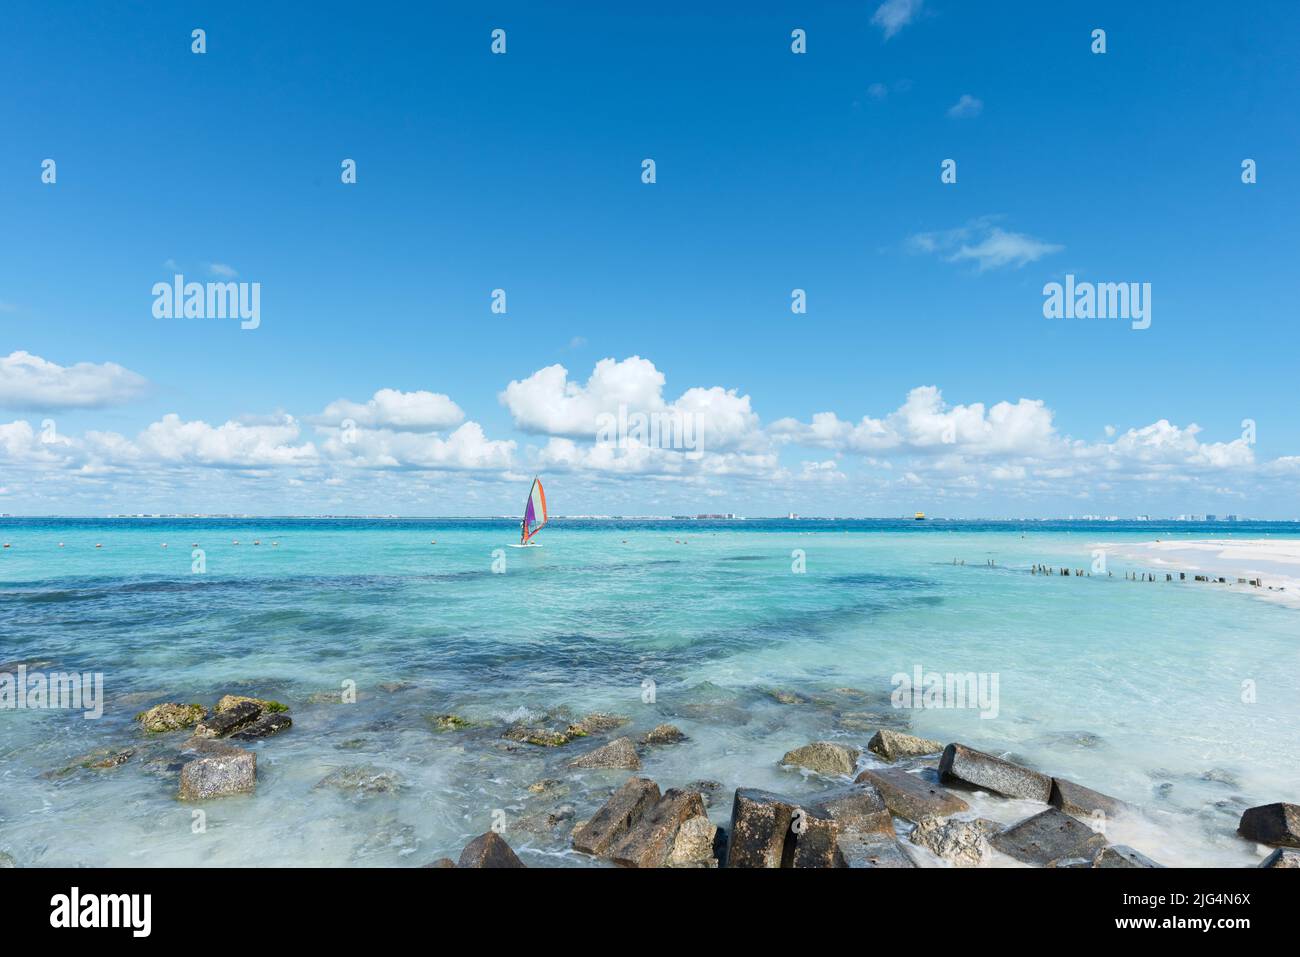 Hombre irreconocible haciendo windsurf cerca de una playa tropical en Isla Mujeres, México. En el fondo está el cielo azul. Concepto de vacaciones deportivas Foto de stock